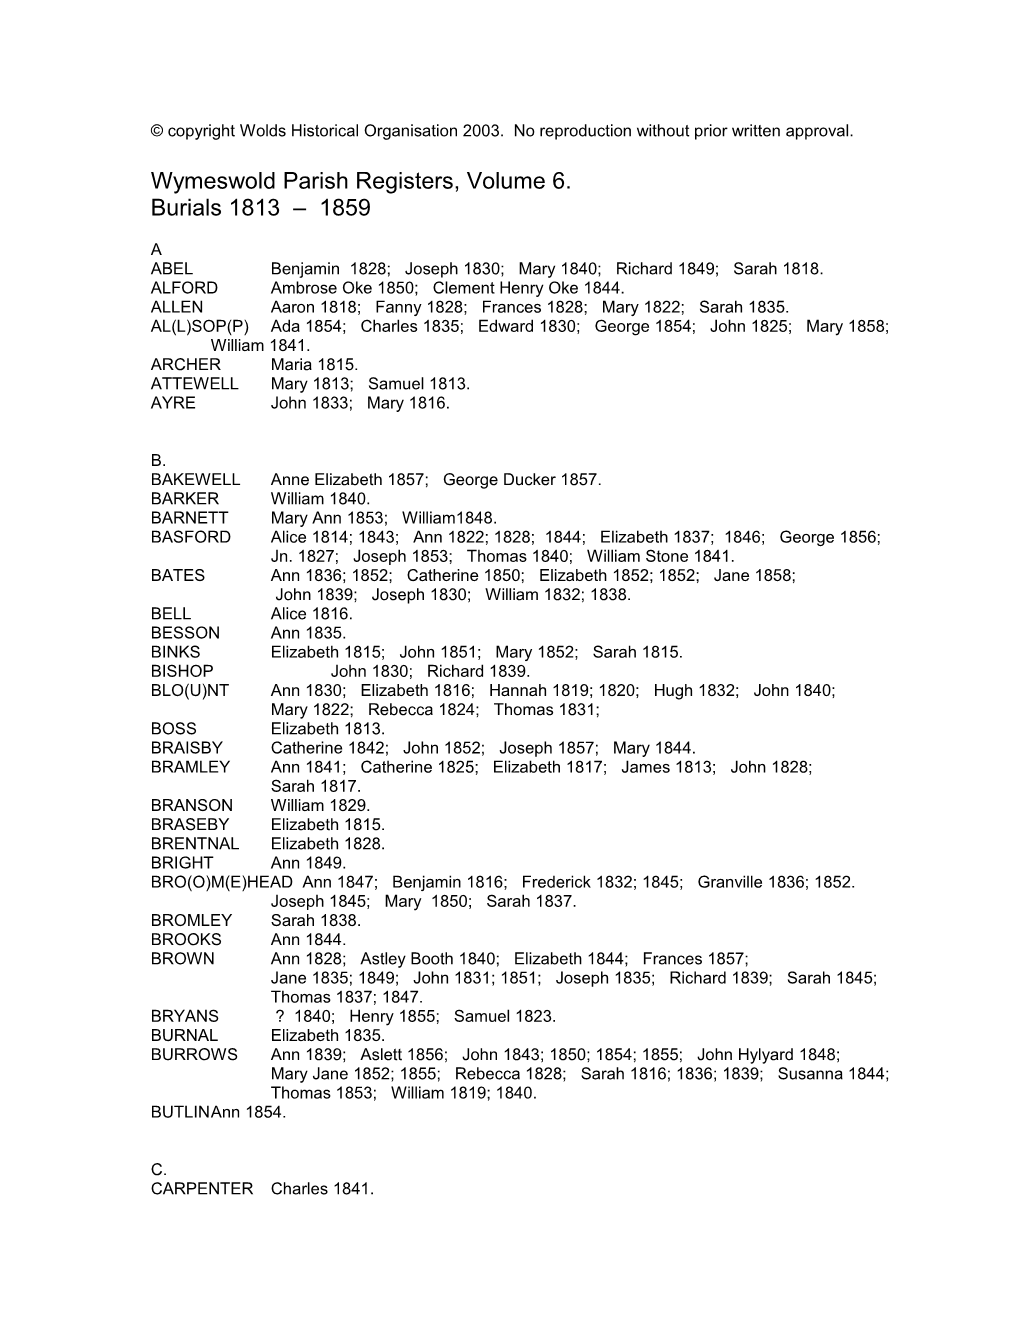 Wymeswold Parish Registers, Volume 6